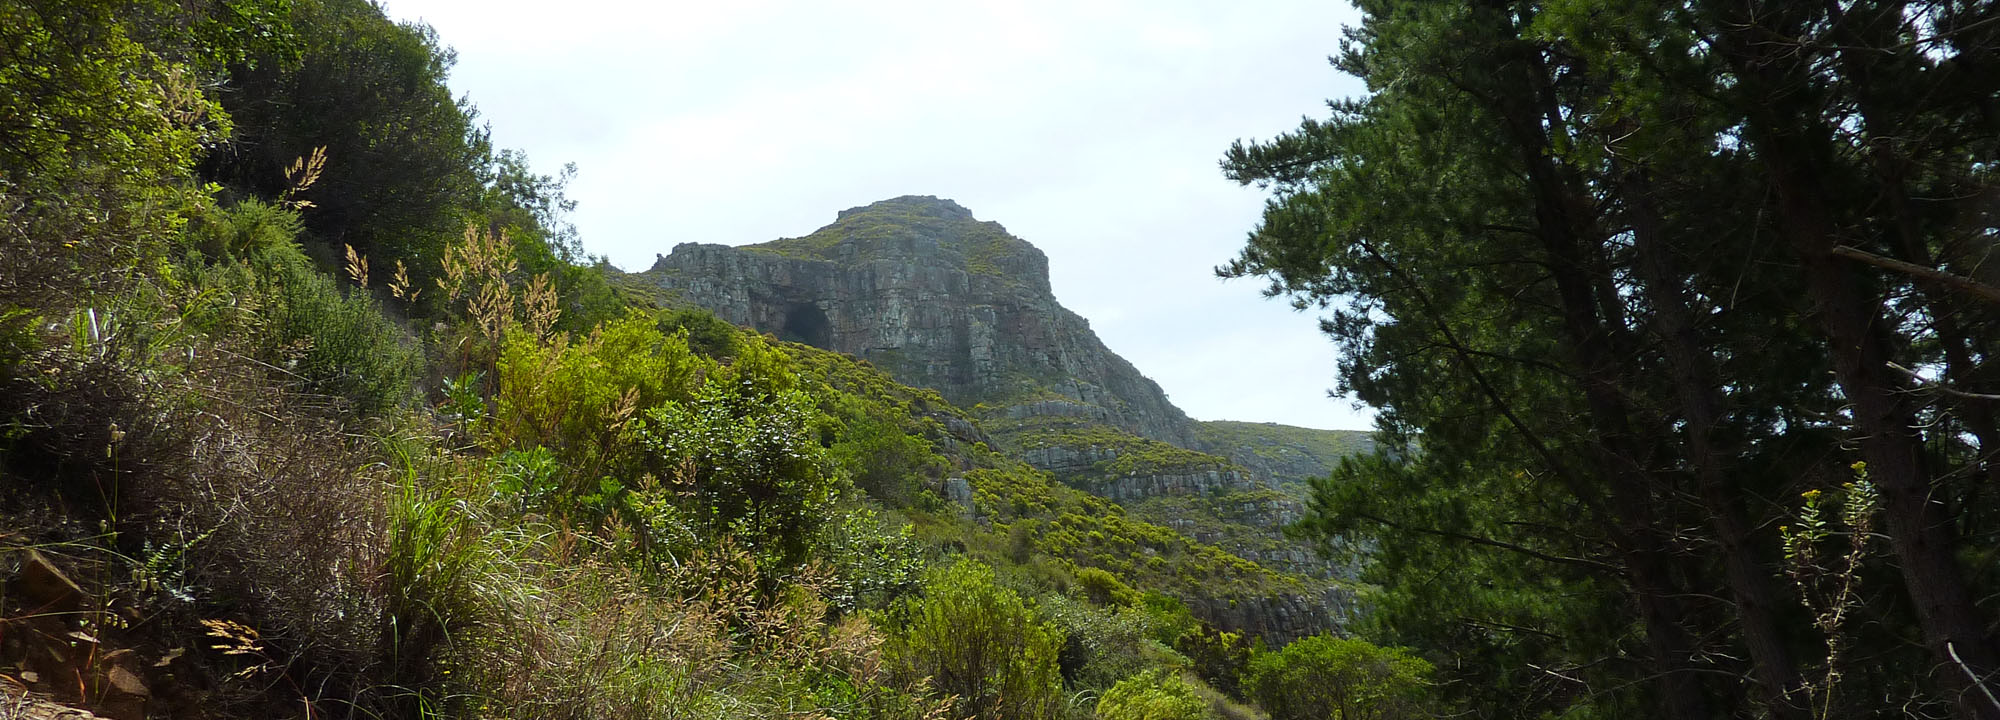 Table Mountain Elephant's Eye hike